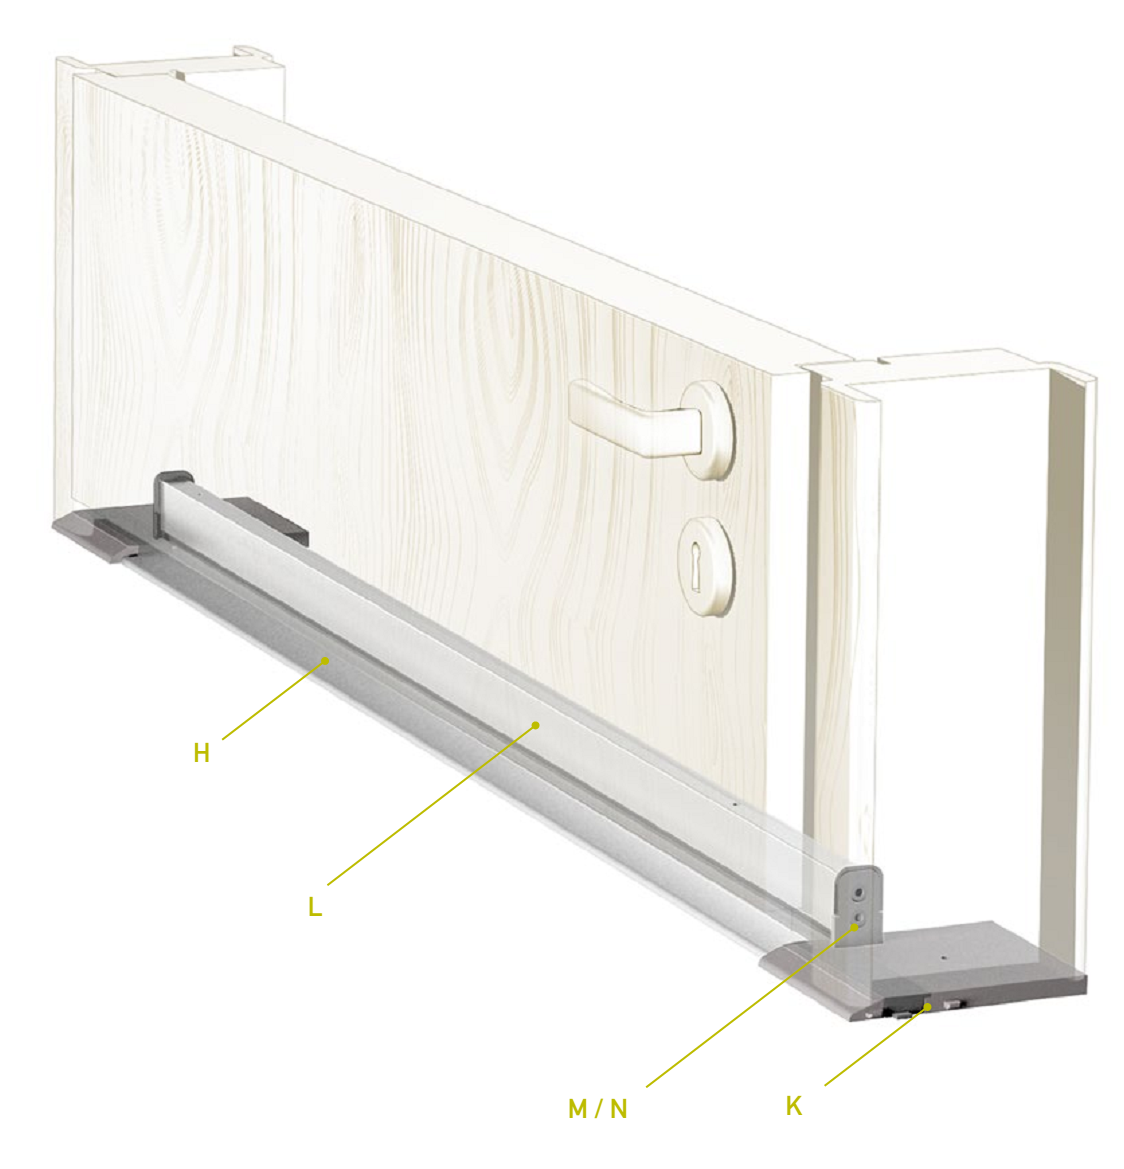 CCE -  Soglia TERMO ULISSE WOOD per porta d'ingresso in legno con taglio termico - col. ARGENTO - l. 71 - h. 9 - l. max 1030